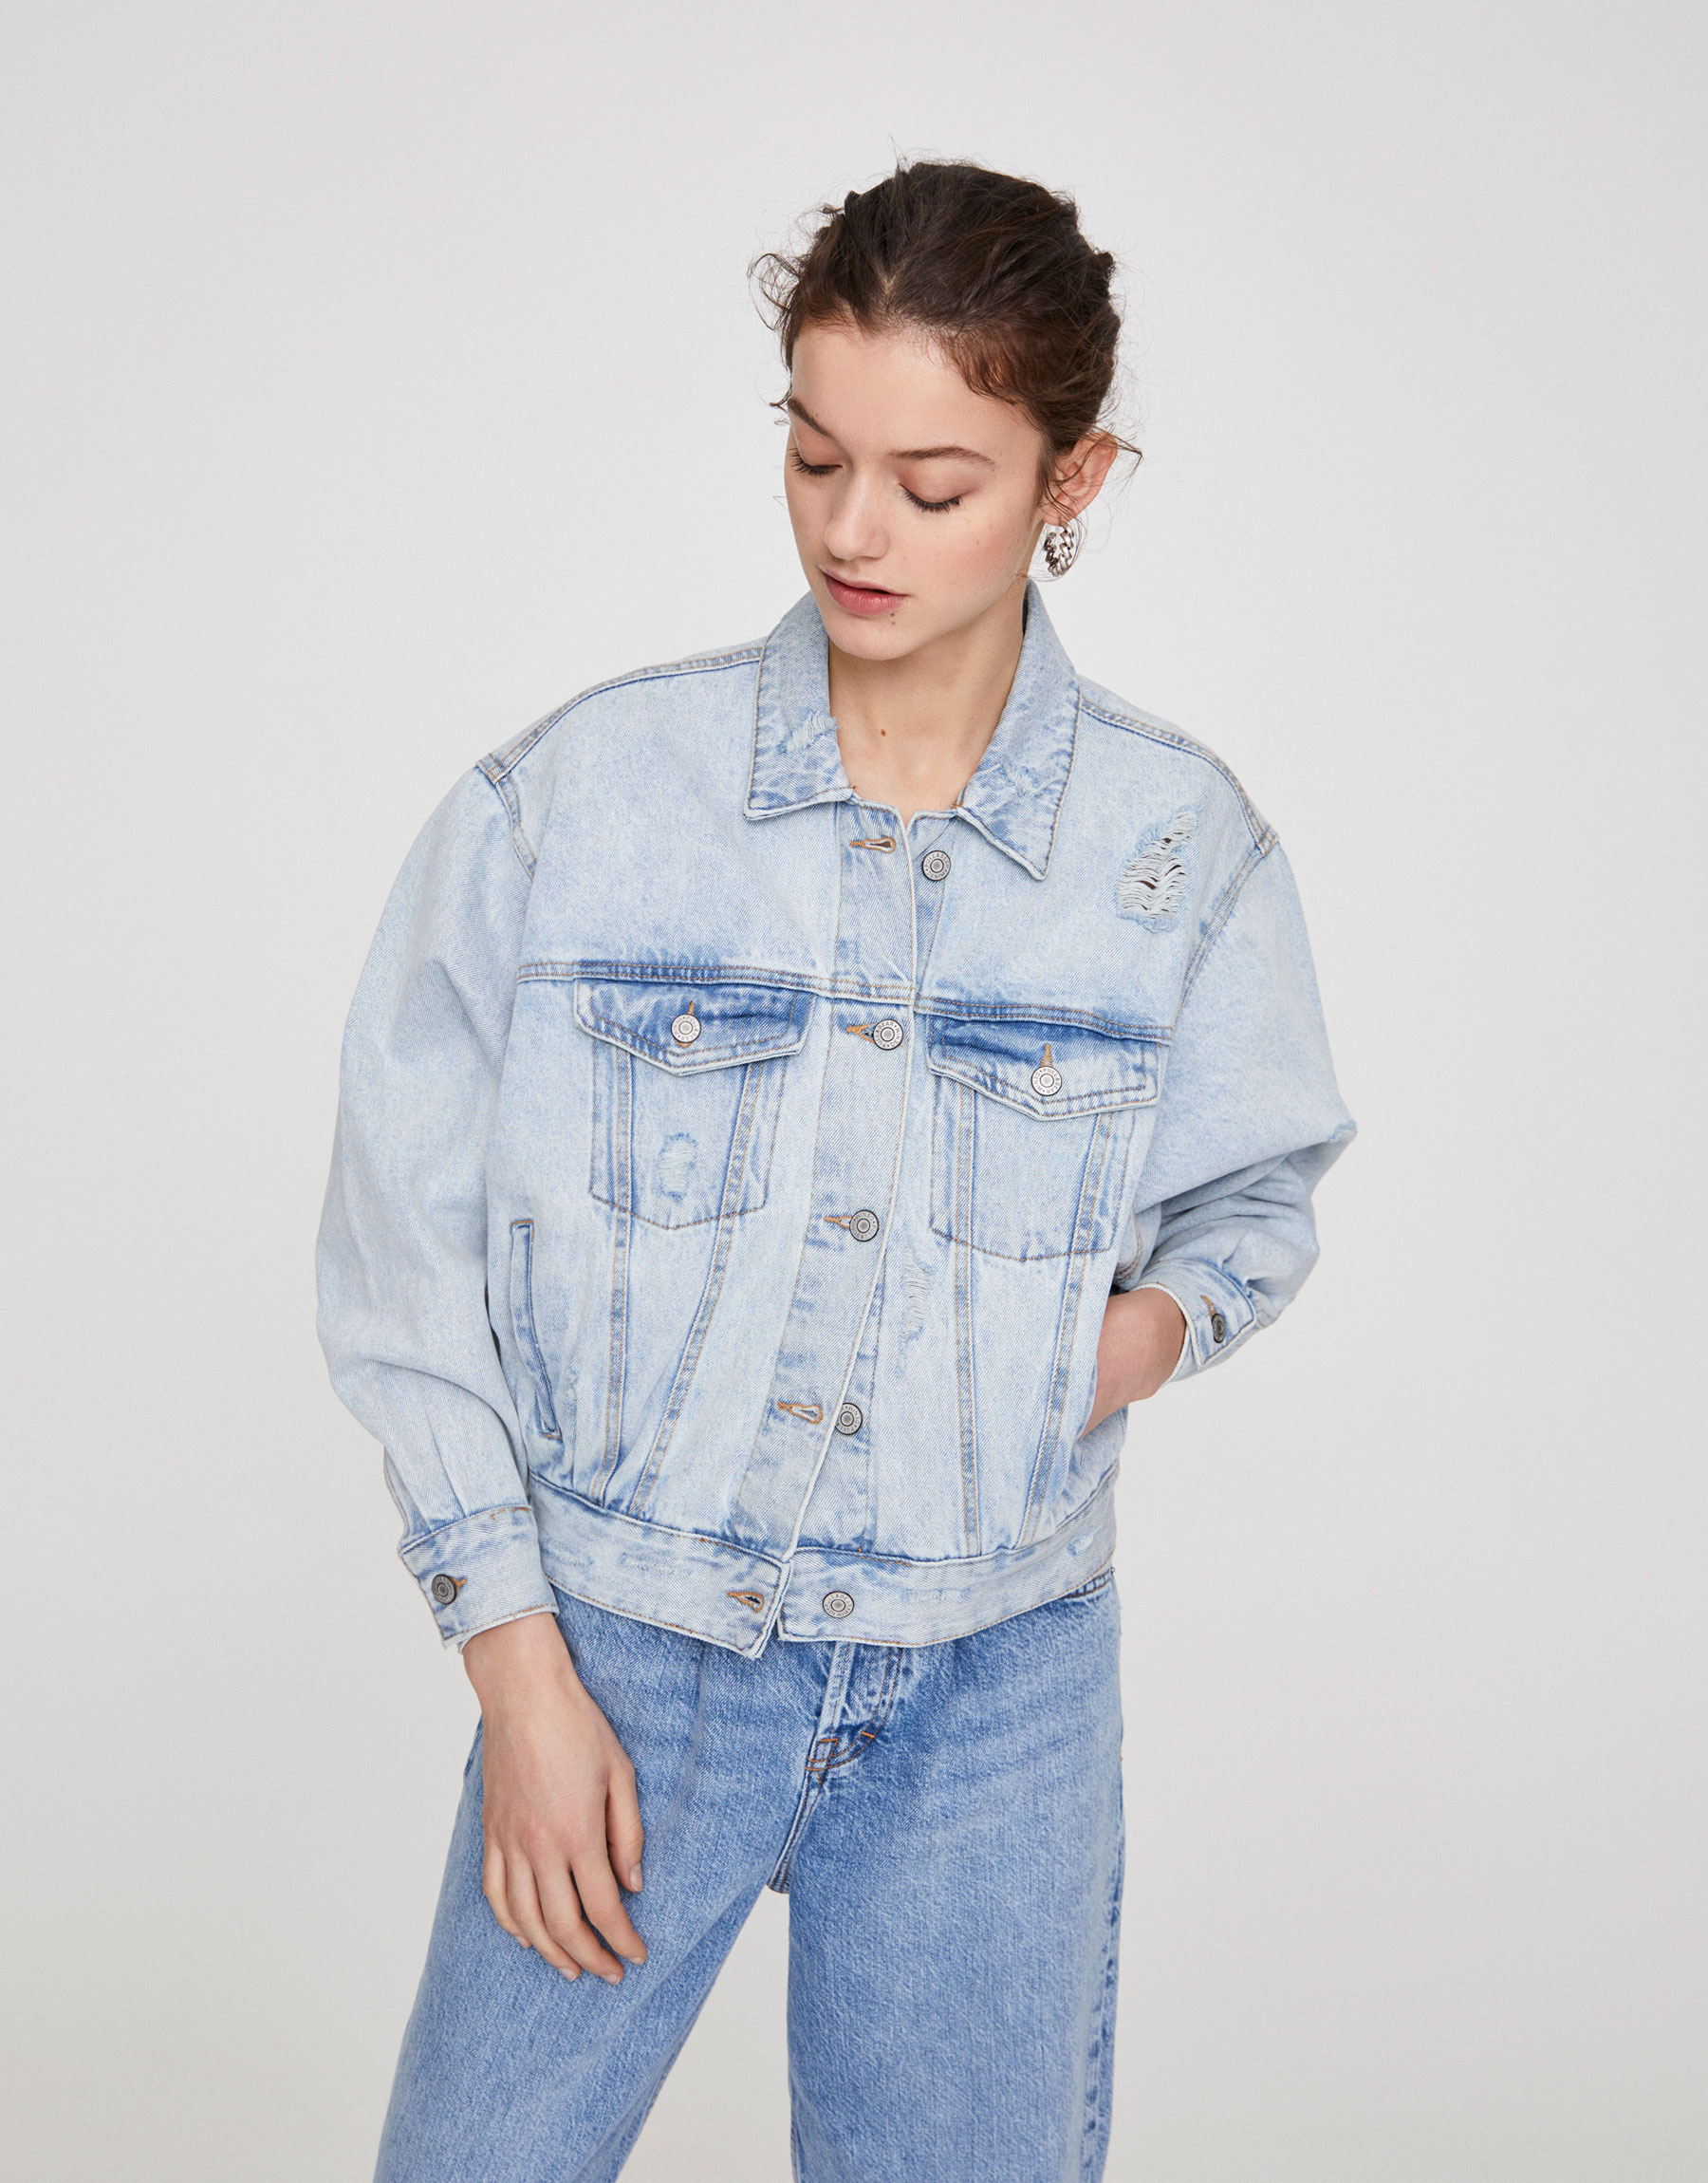 80s style jean jacket